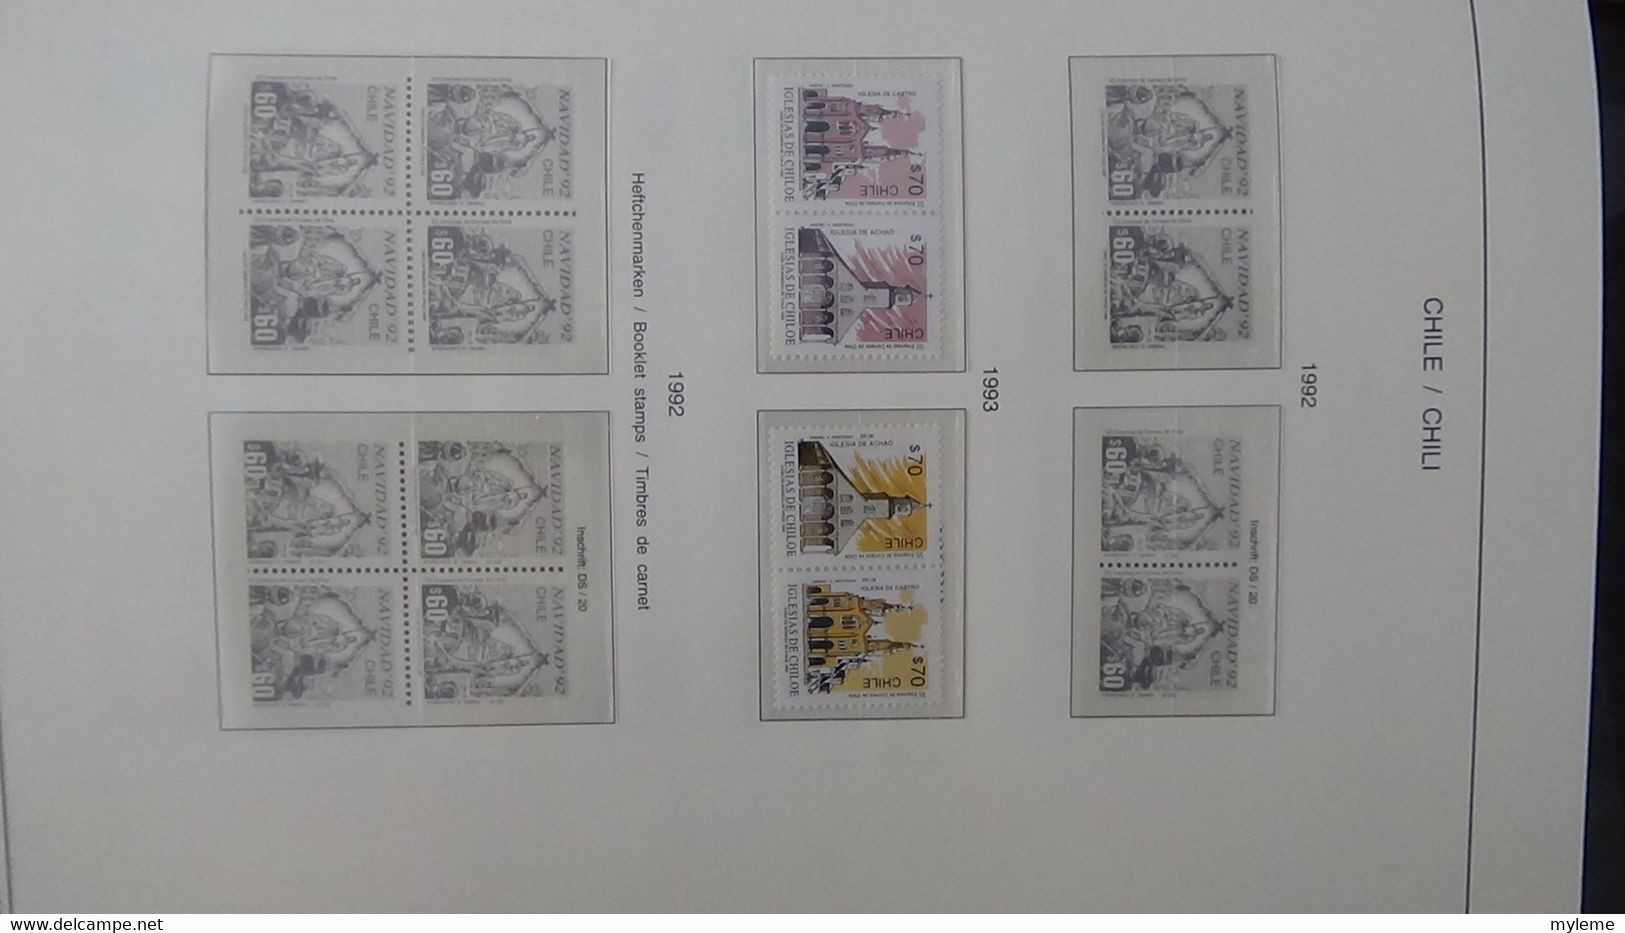 S197 Collection du Chili timbres et blocs ** en reliure  SCHAUBECK de 1974 à 1997. A saisir !!!